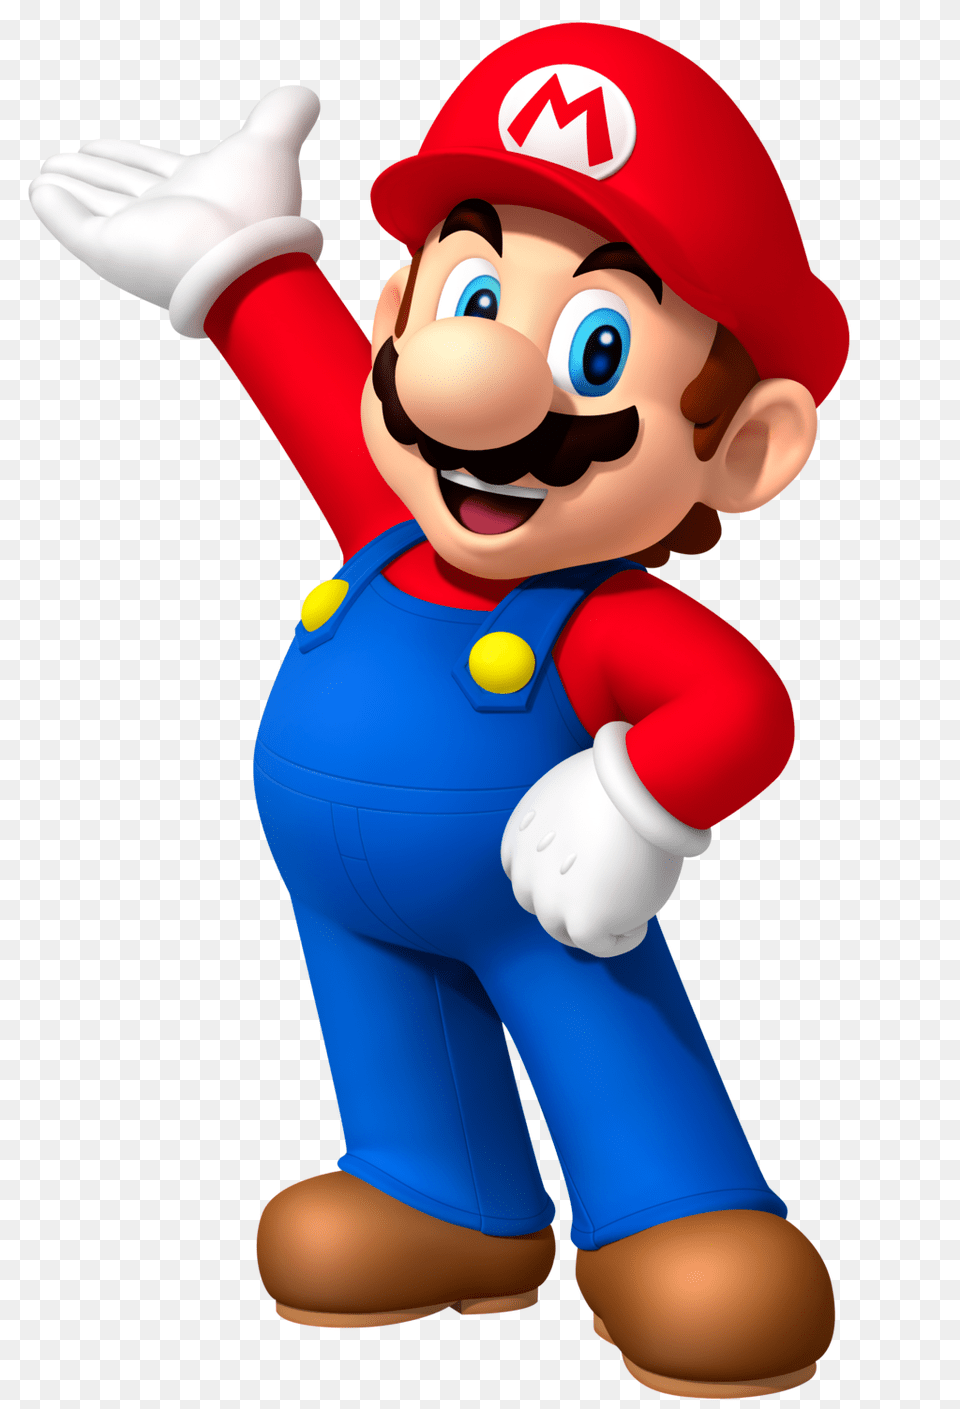 Mario Clip Art, Baby, Person, Game, Super Mario Png Image